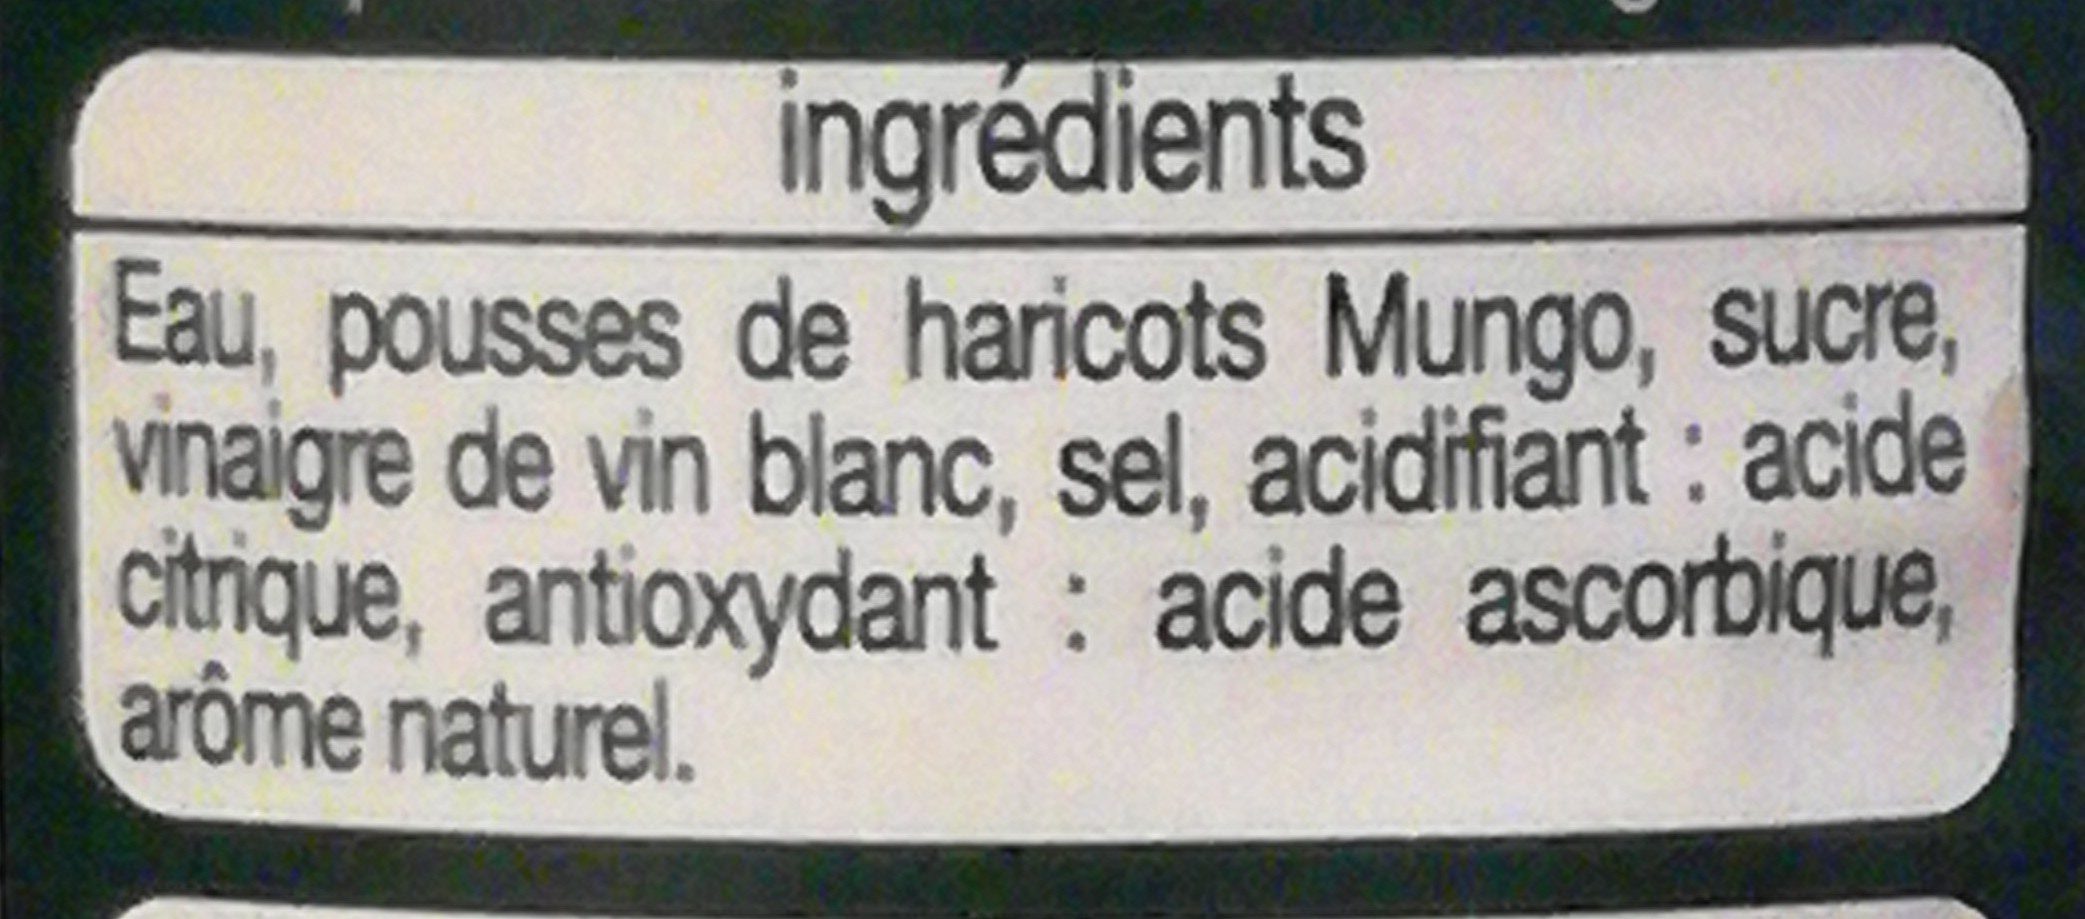 Pousses de haricots Mungo - Ingredients - fr